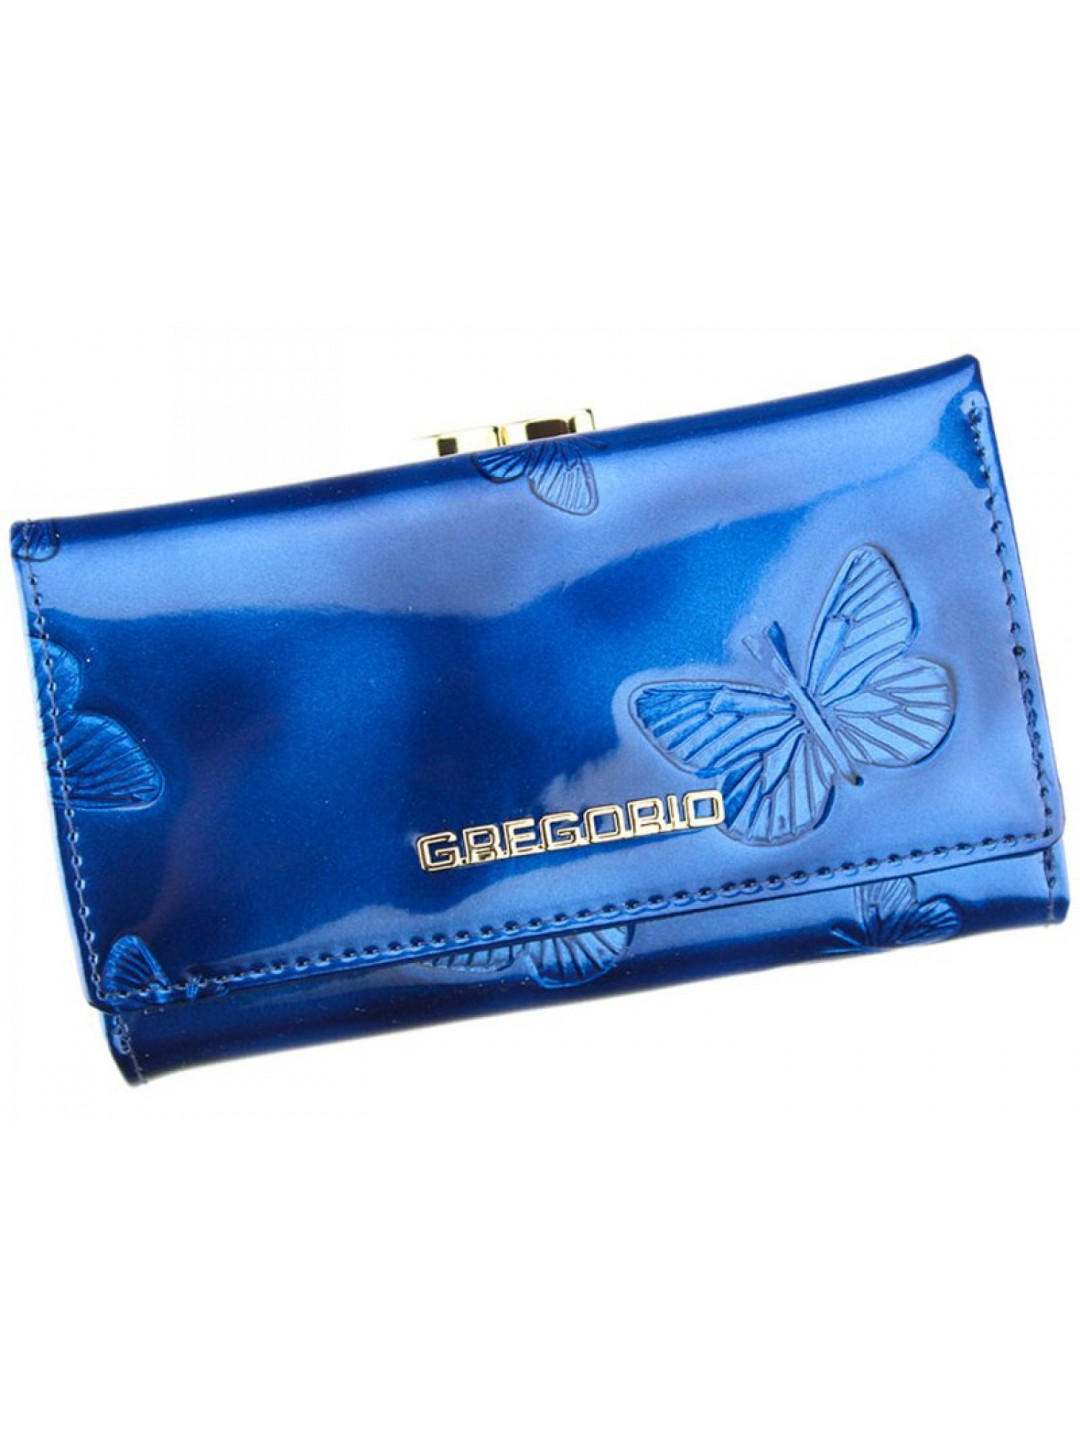 Luxusní dámská kožená lakovaná peněženka Flor modrá